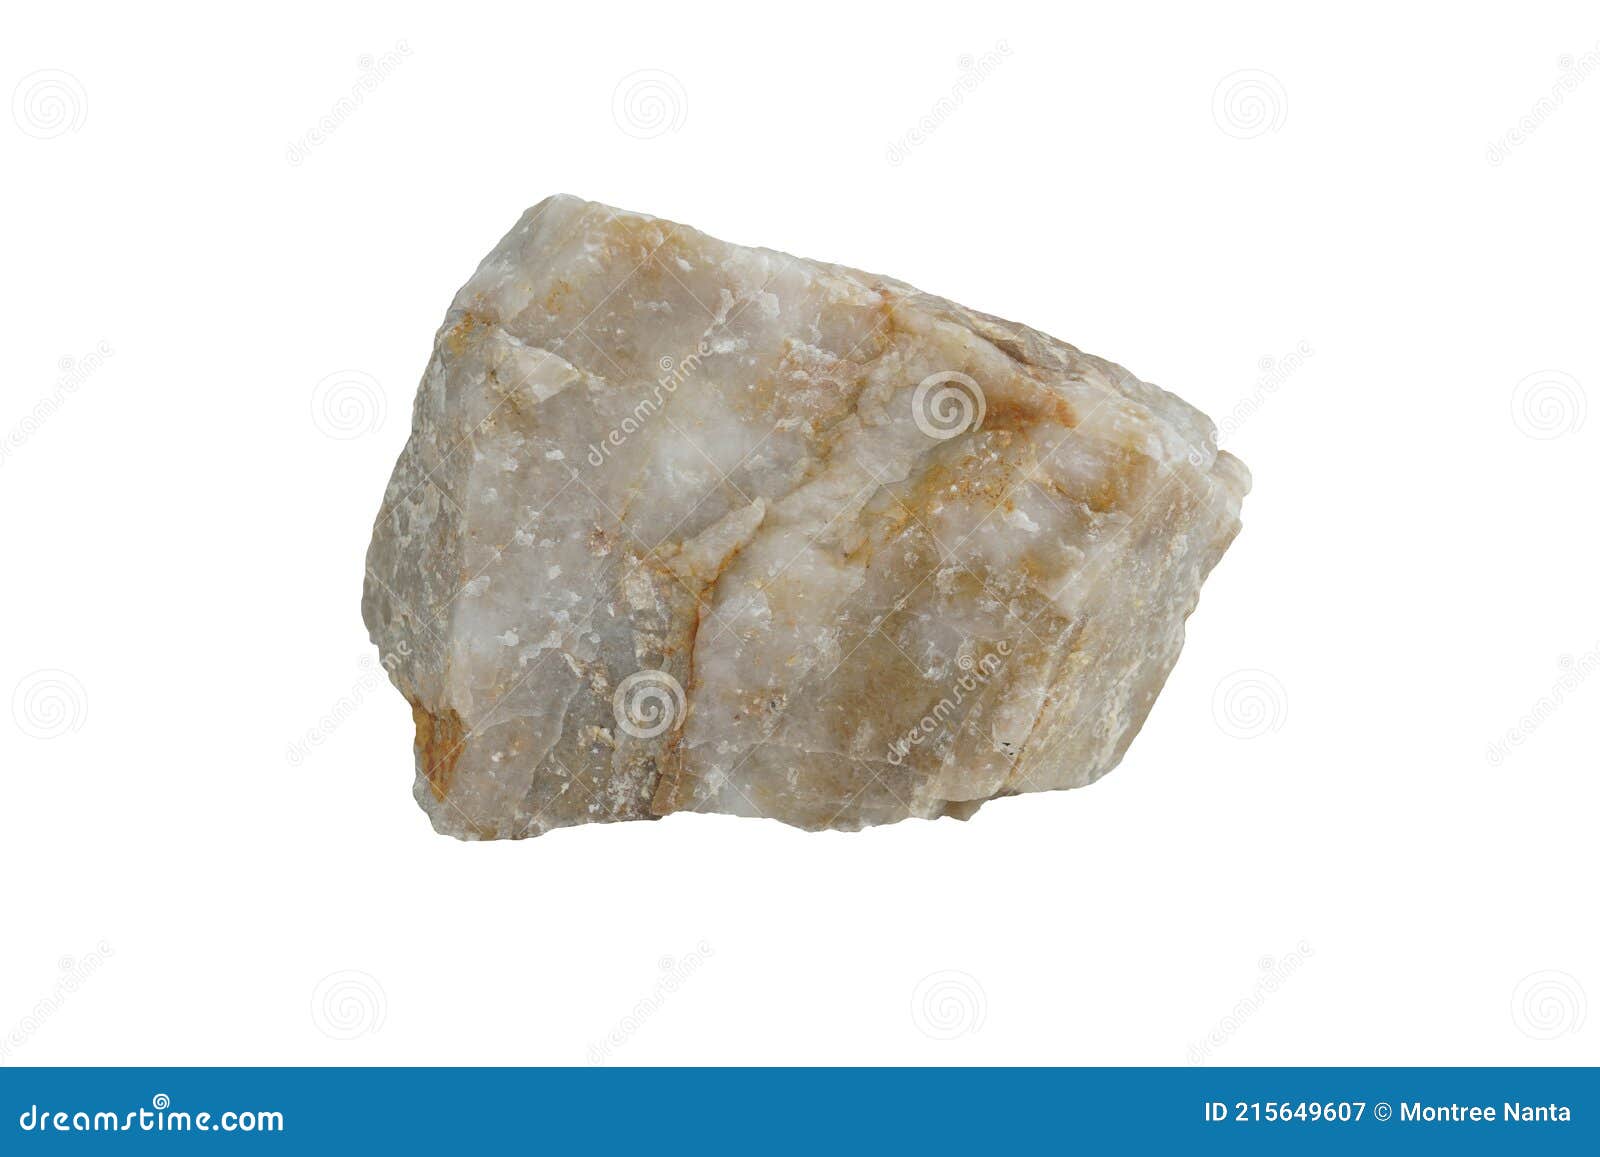 Quartzite Rock Stone Isolated on White Background. Stock Image